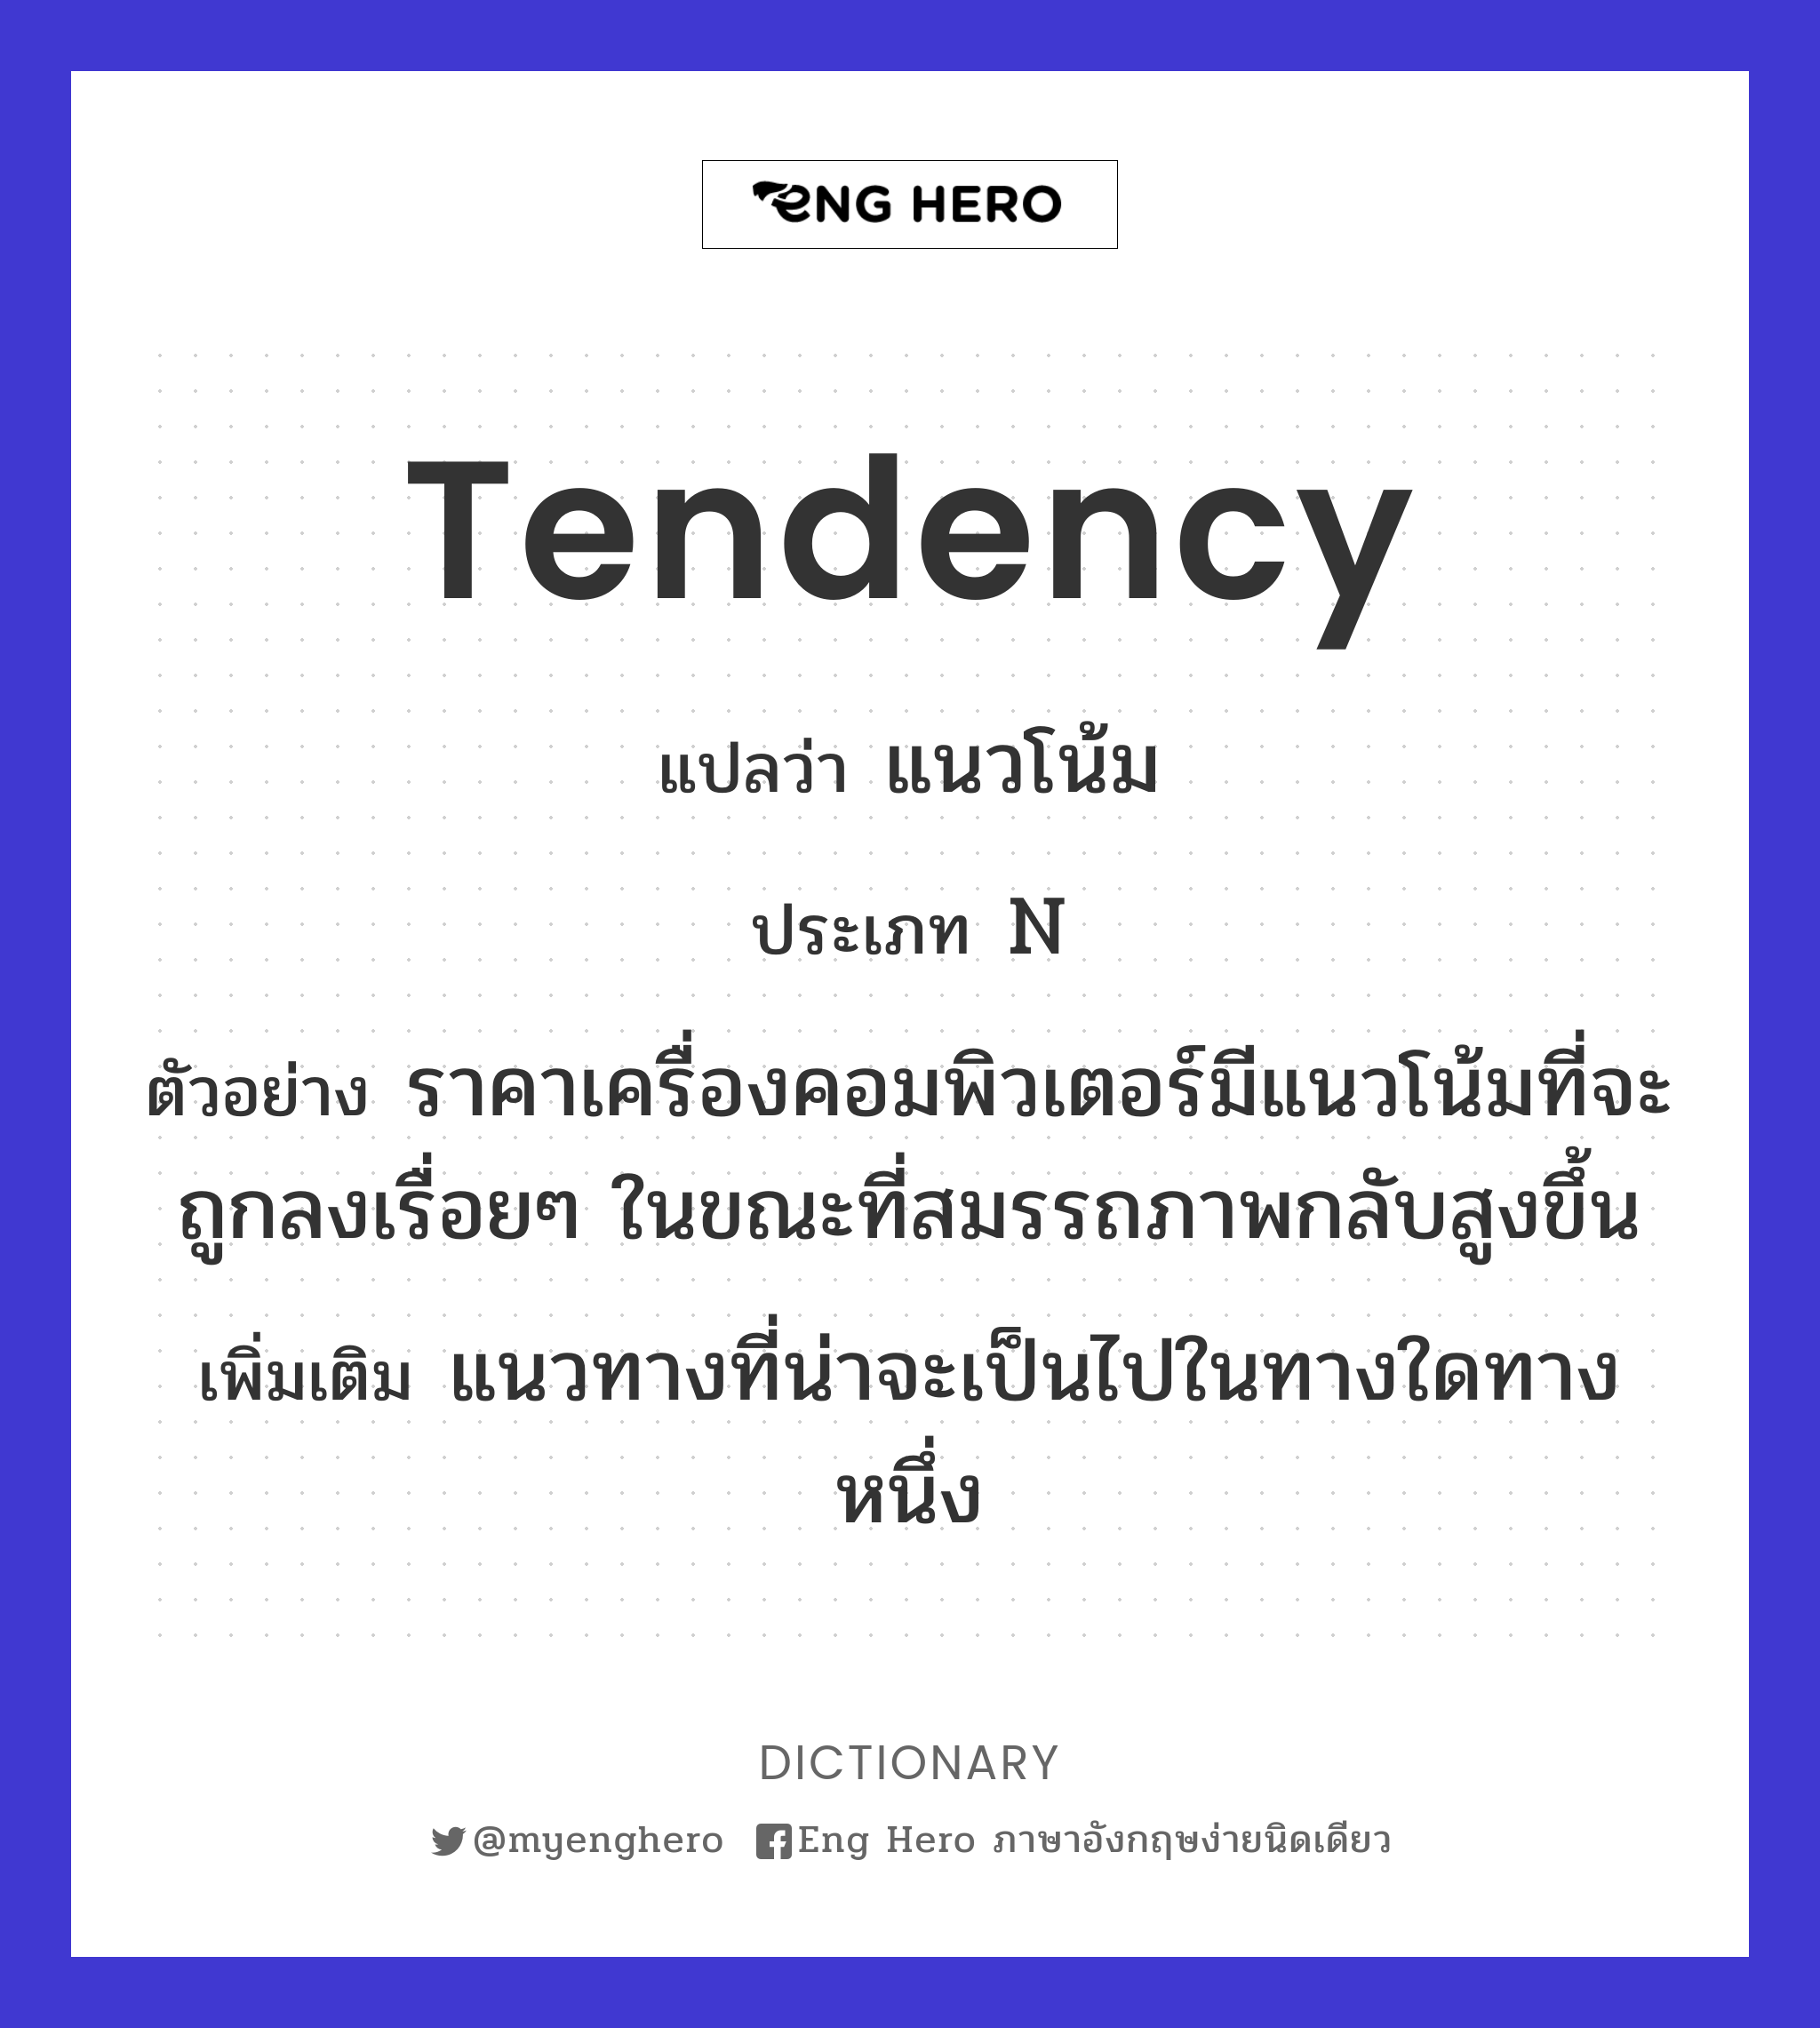 tendency